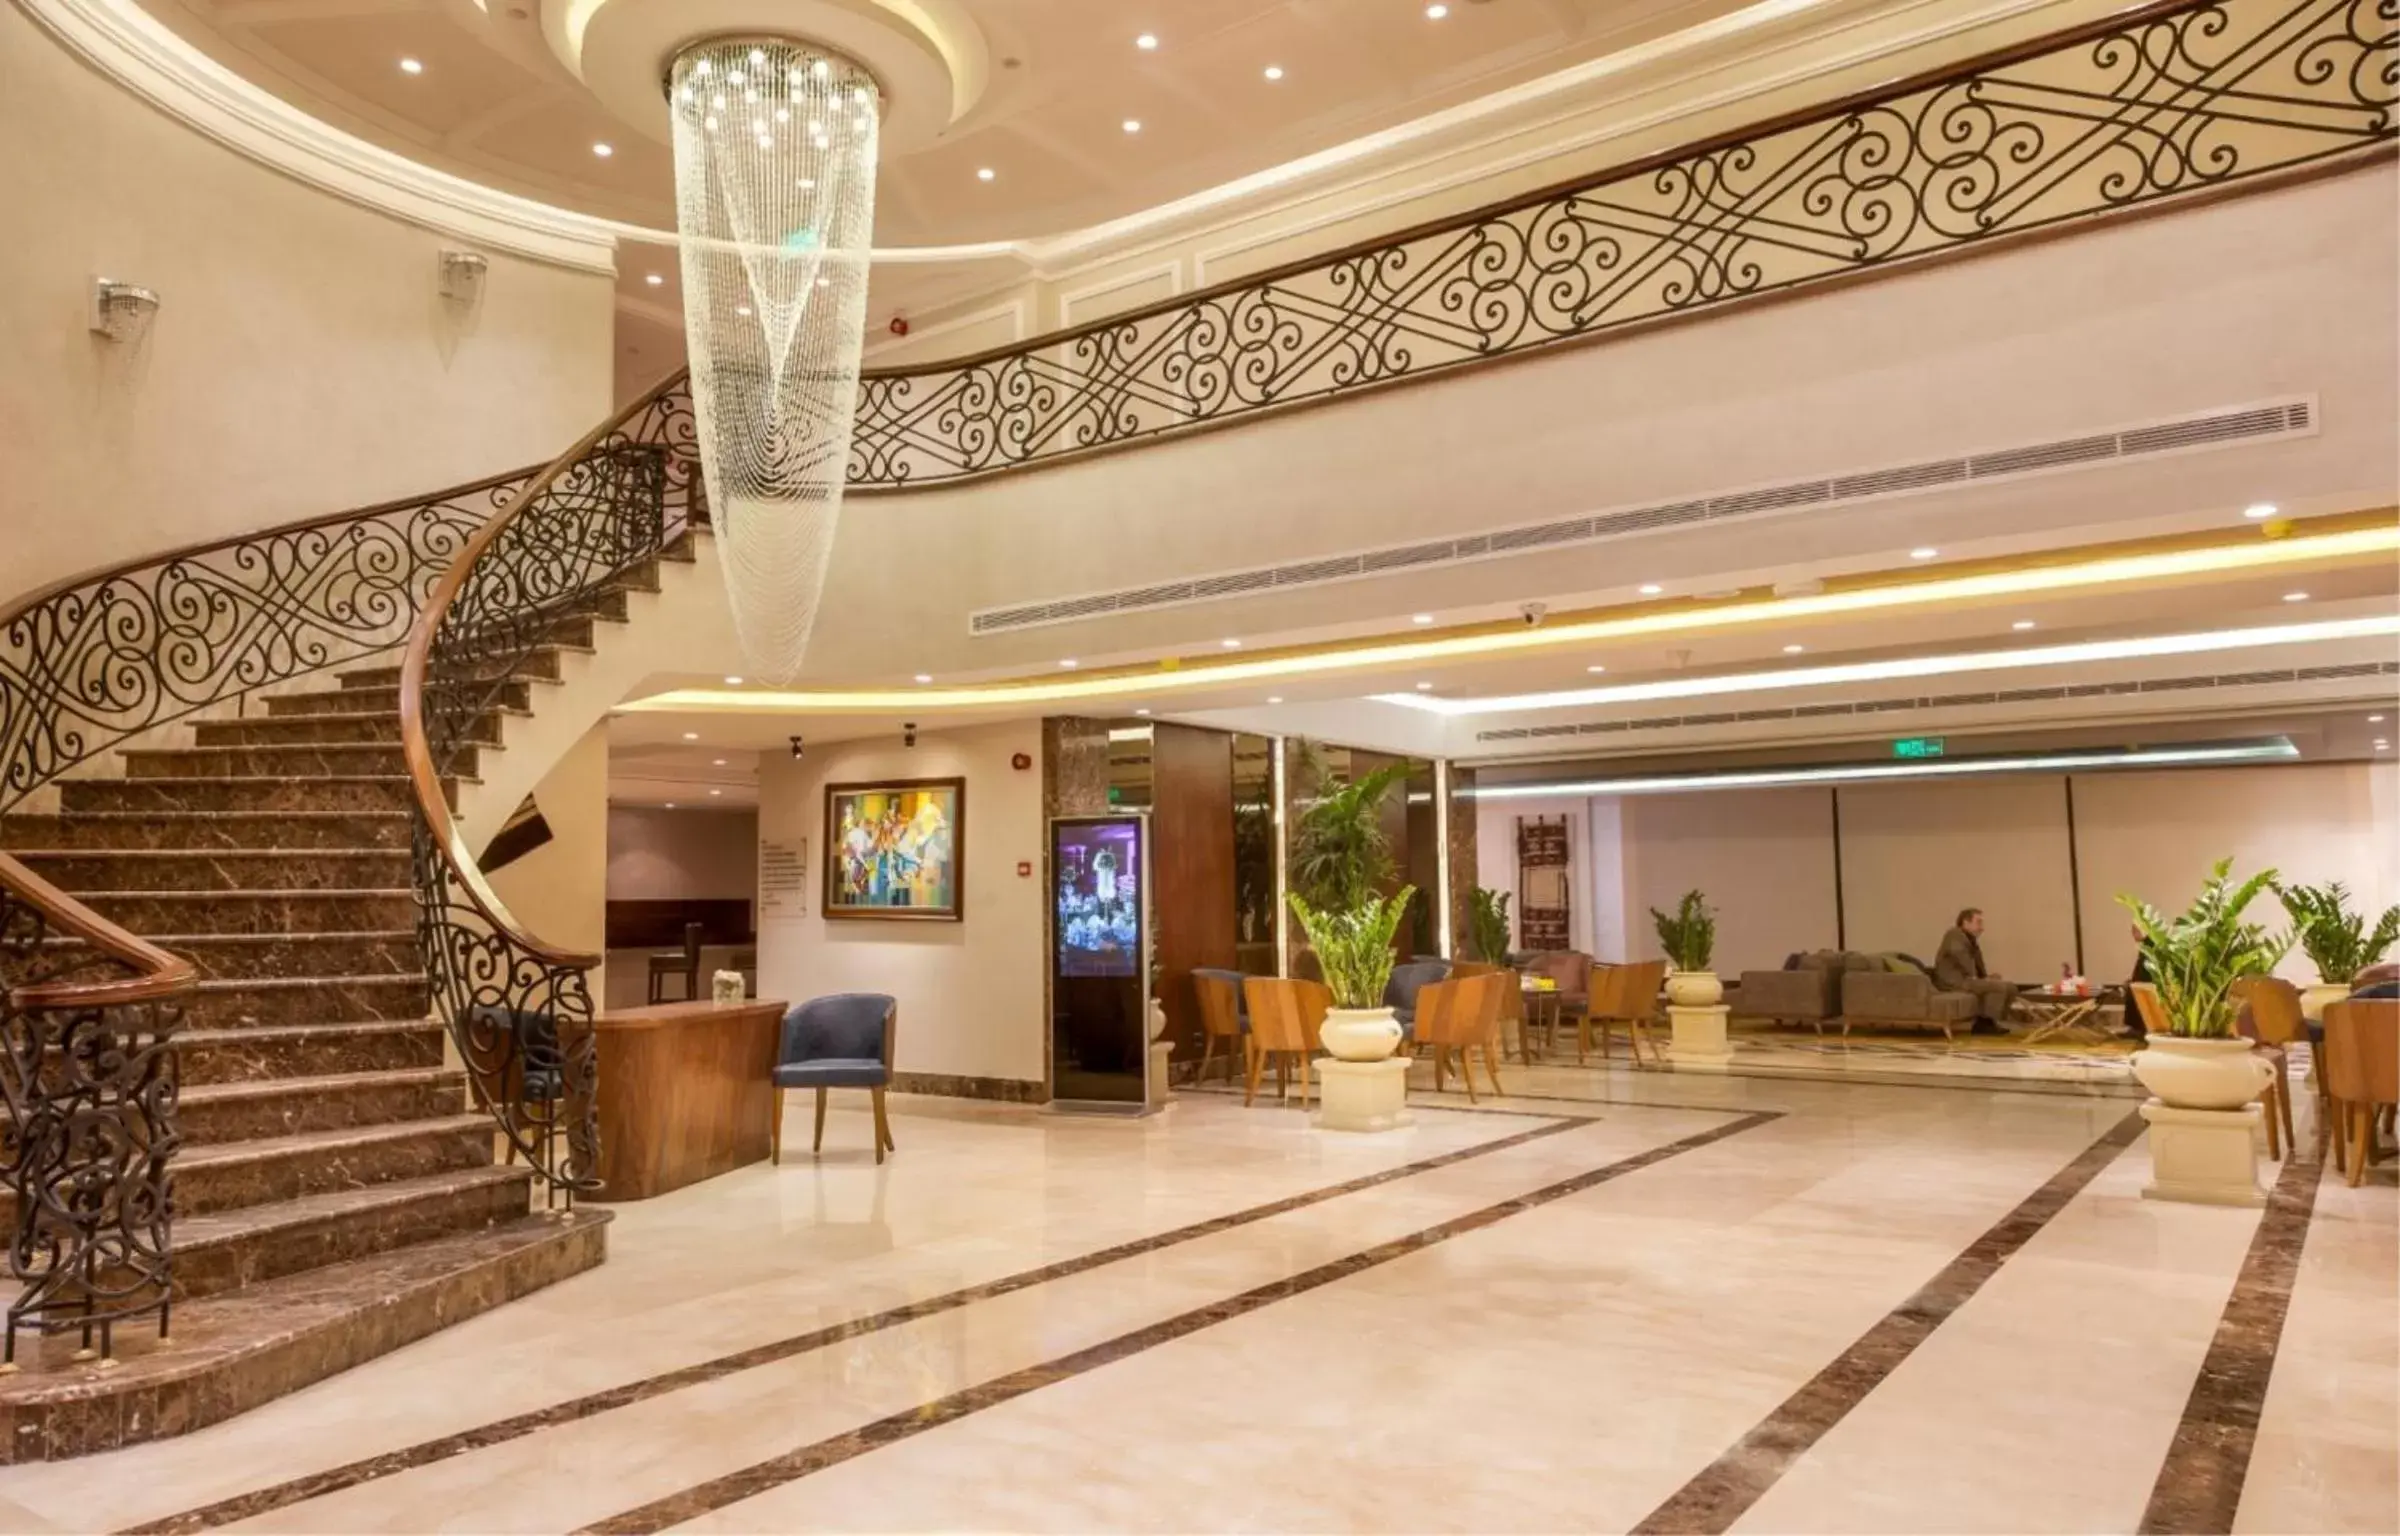 Lobby or reception, Lobby/Reception in Gerasa Hotel